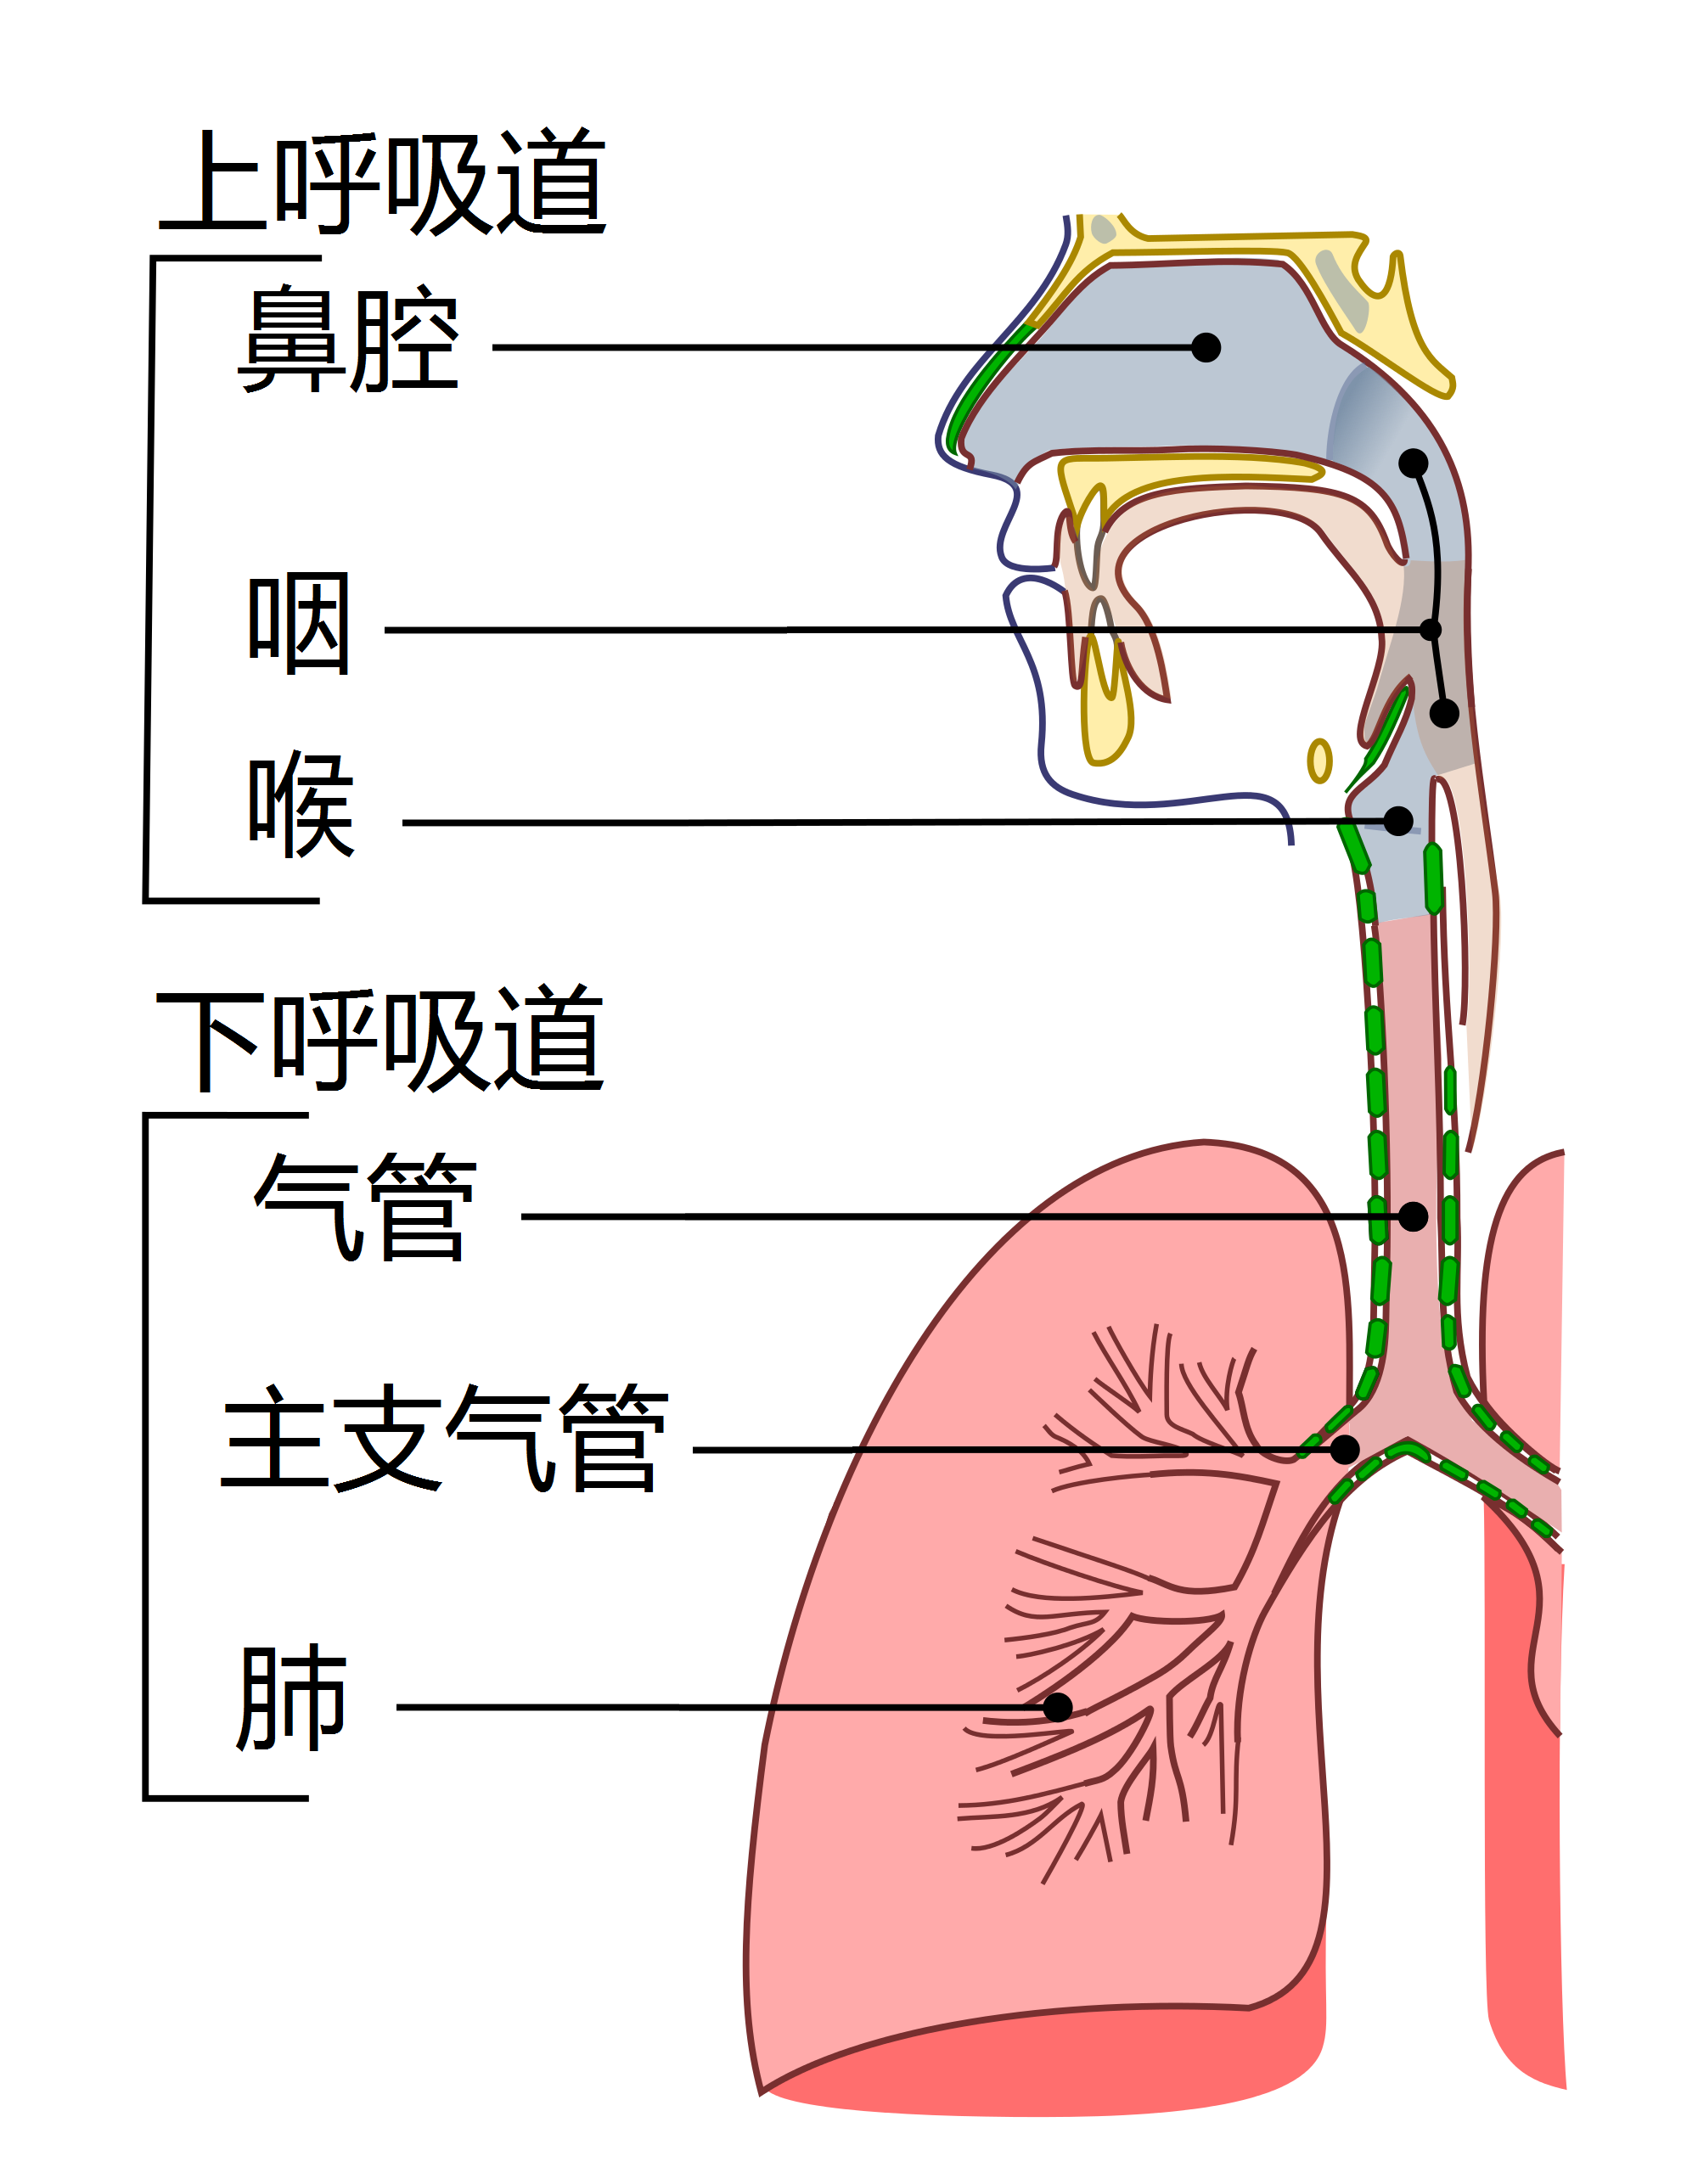 呼吸道结构图